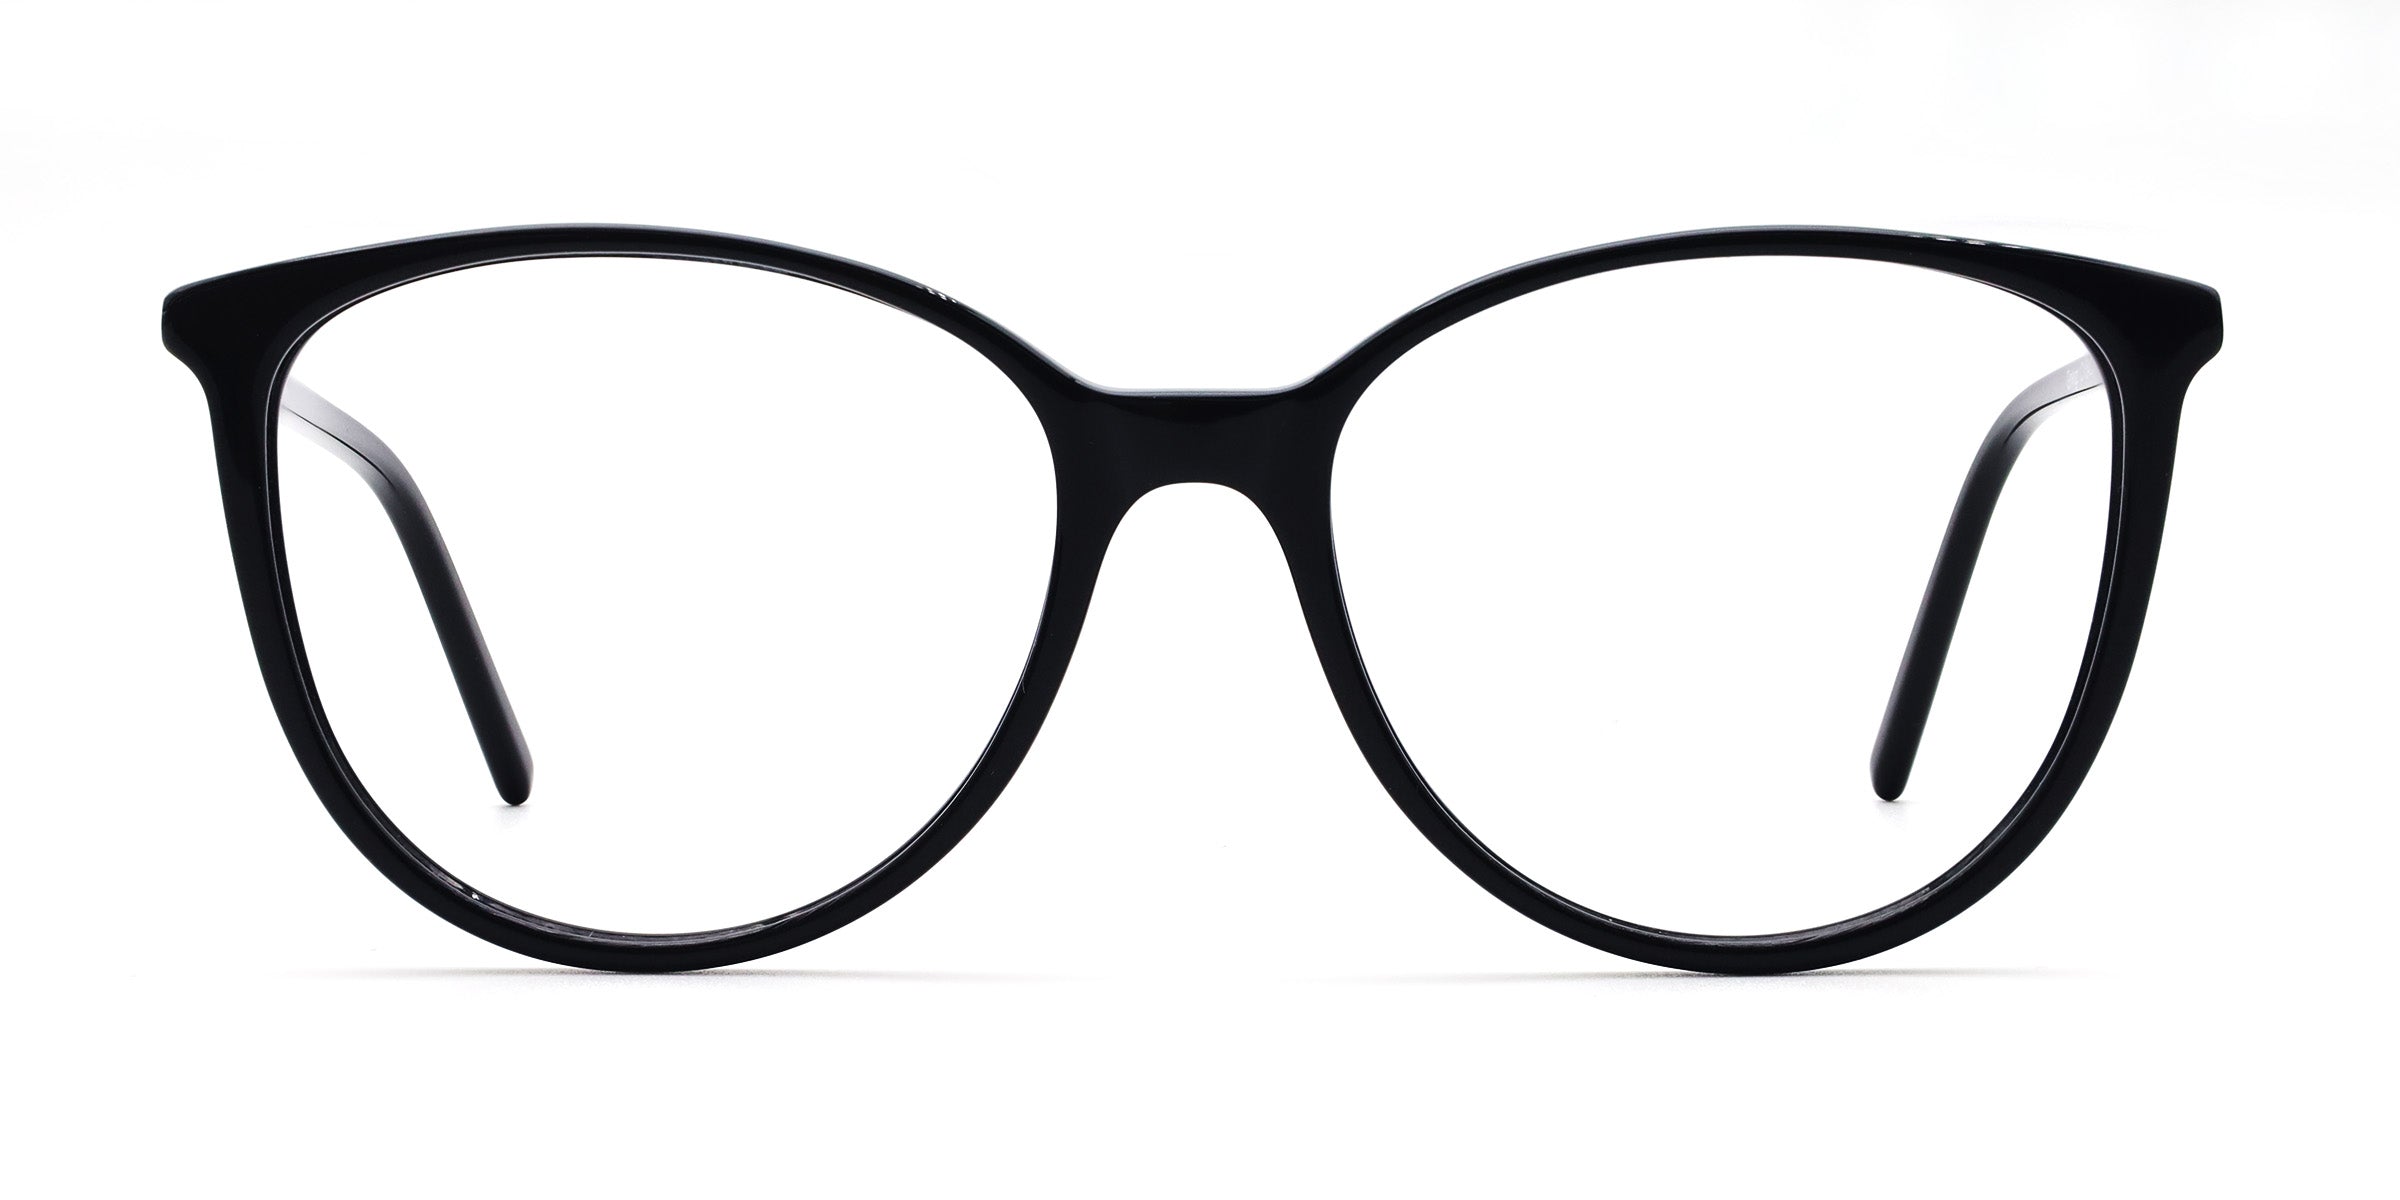 Ginkgo Oval Black Eyeglasses - Mouqy Eyewear